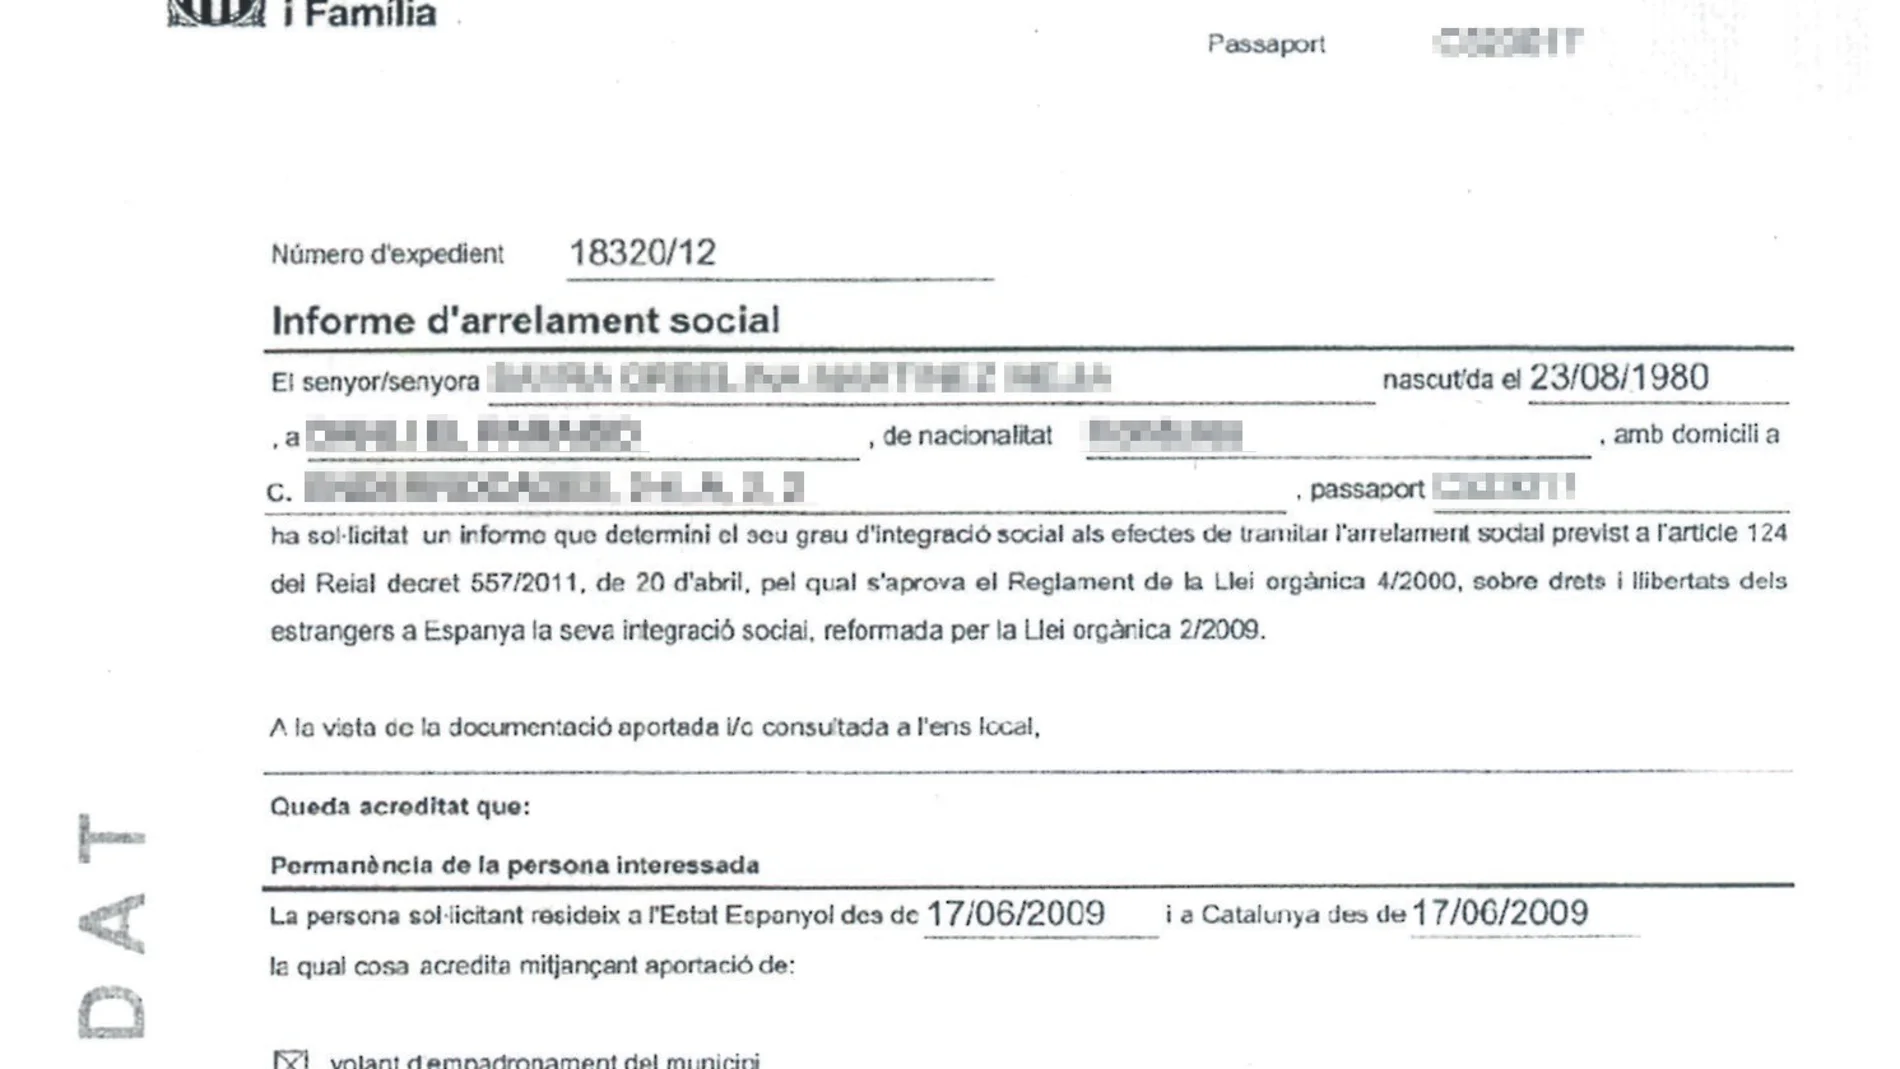 Los informes de arraigo solicitados por Sayra acreditan el empadronamiento, los vínculos familiares y el contrato de trabajo. Sin embargo la solicitud «no es favorable» por no tener los conocimientos mínimos de catalán.